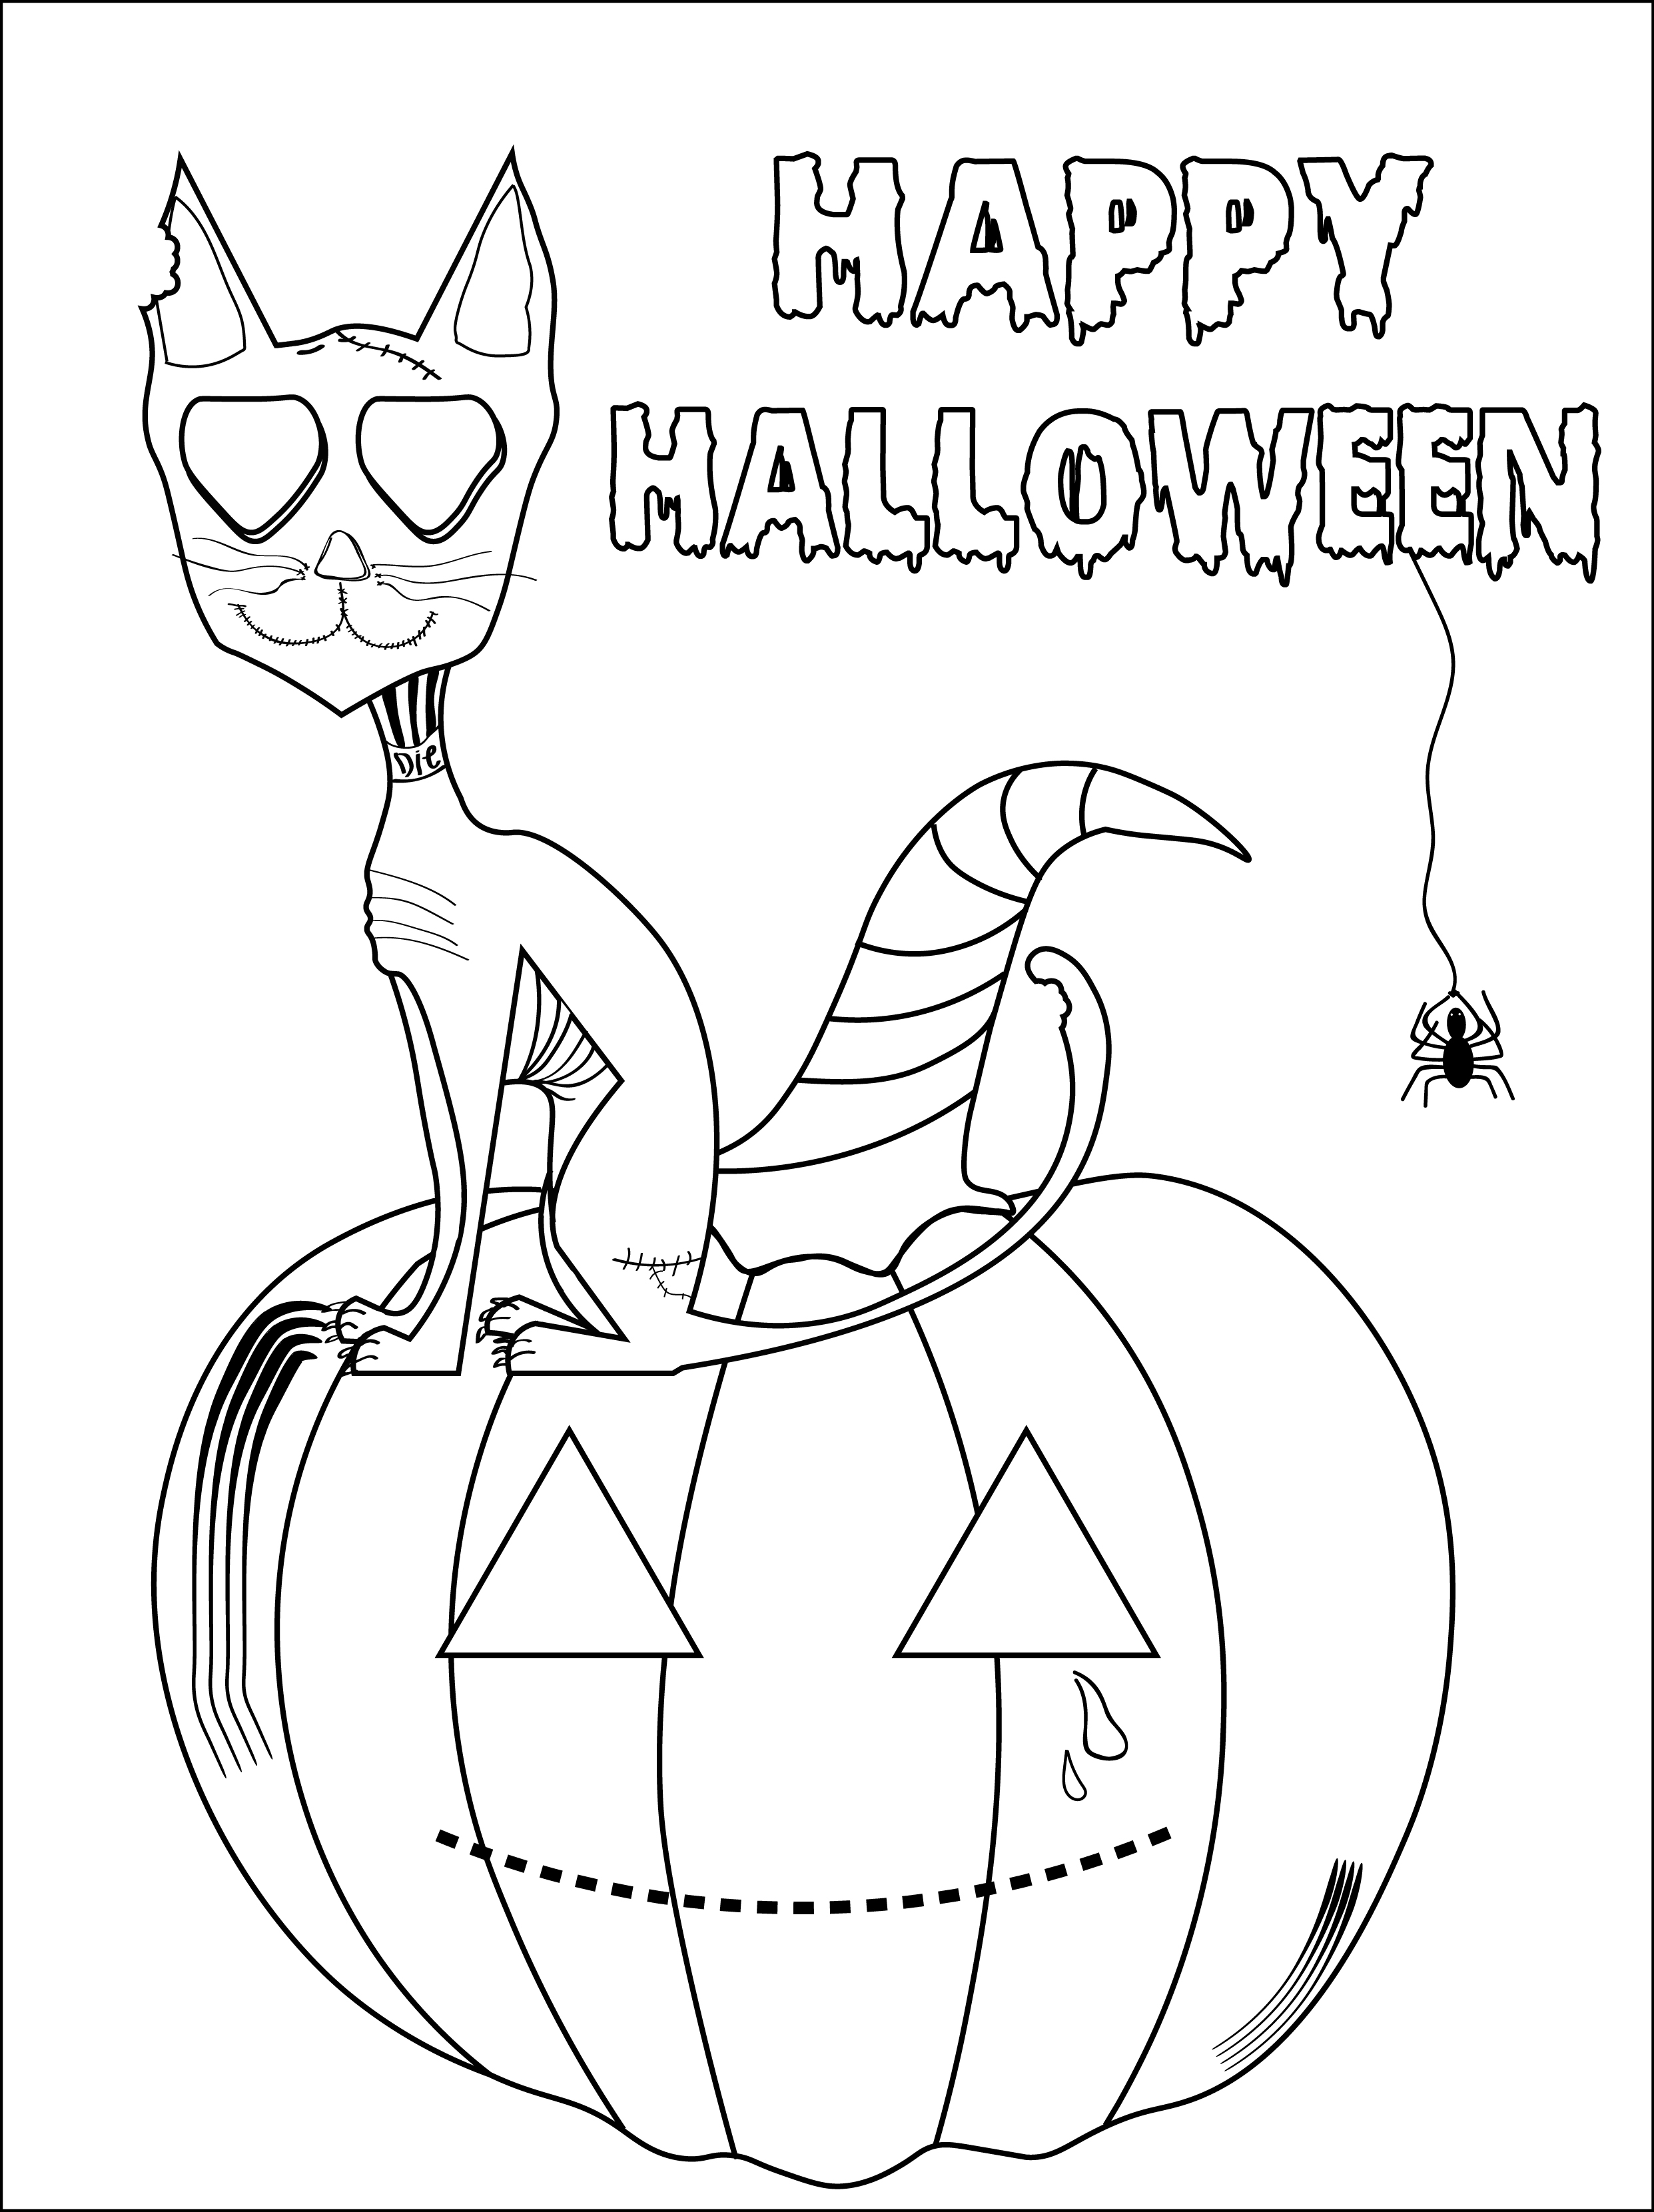 Dibujo para colorear de Halloween gato sobre calabaza, con araña